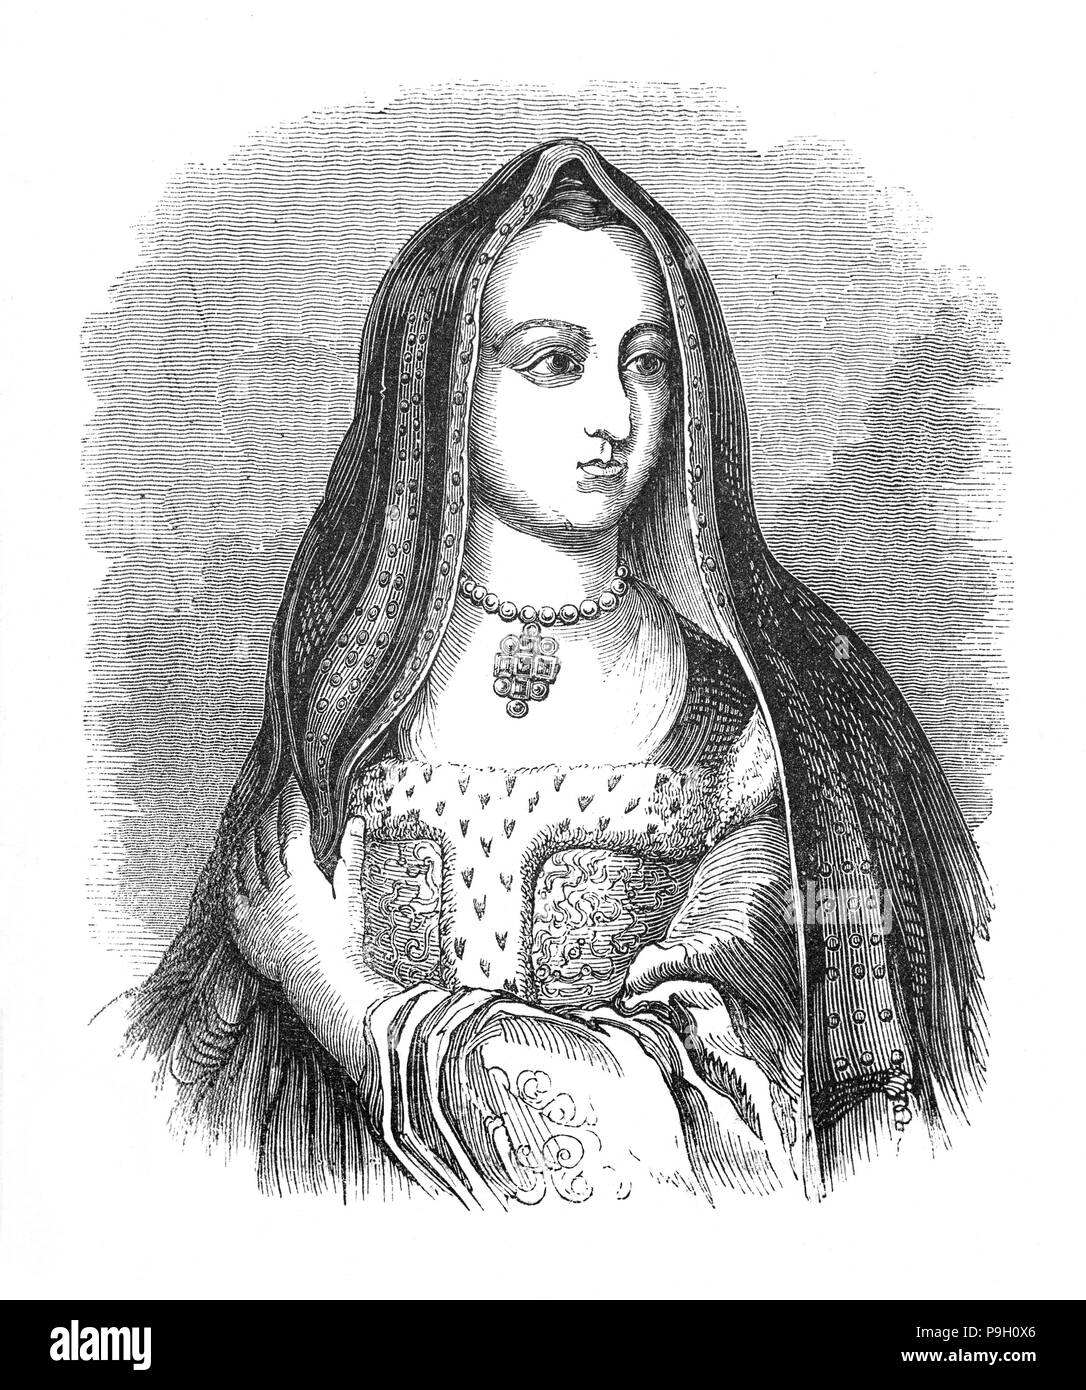 Elizabeth d'York (1466 - 1503) était l'épouse de Henri VII Tudor et de la première reine. La fille d'Édouard IV et nièce de Richard III, elle a épousé Henry en 1485, à la suite de sa victoire à la bataille de Bosworth Field, qui a commencé la dernière phase de la guerre des Deux-Roses. Ensemble, elle et Henry a eu un total de quatre fils, dont trois sont morts avant leur père, laissant leur frère, Henry VIII, pour succéder à son père comme roi. Banque D'Images